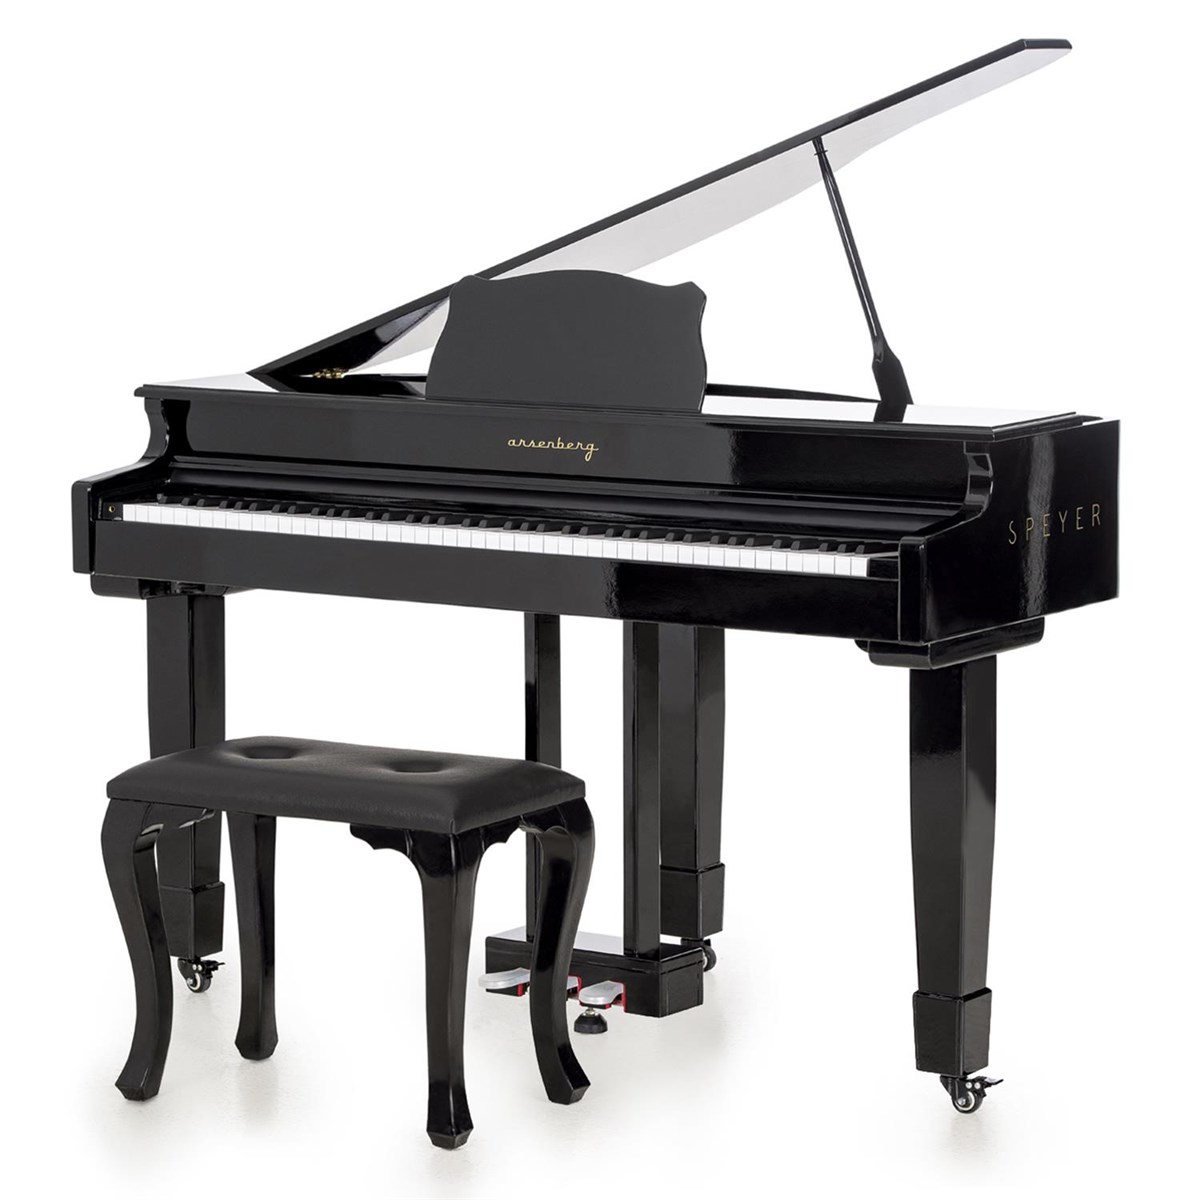 Arsenberg Speyer Serisi AG40S Grand Piyano 